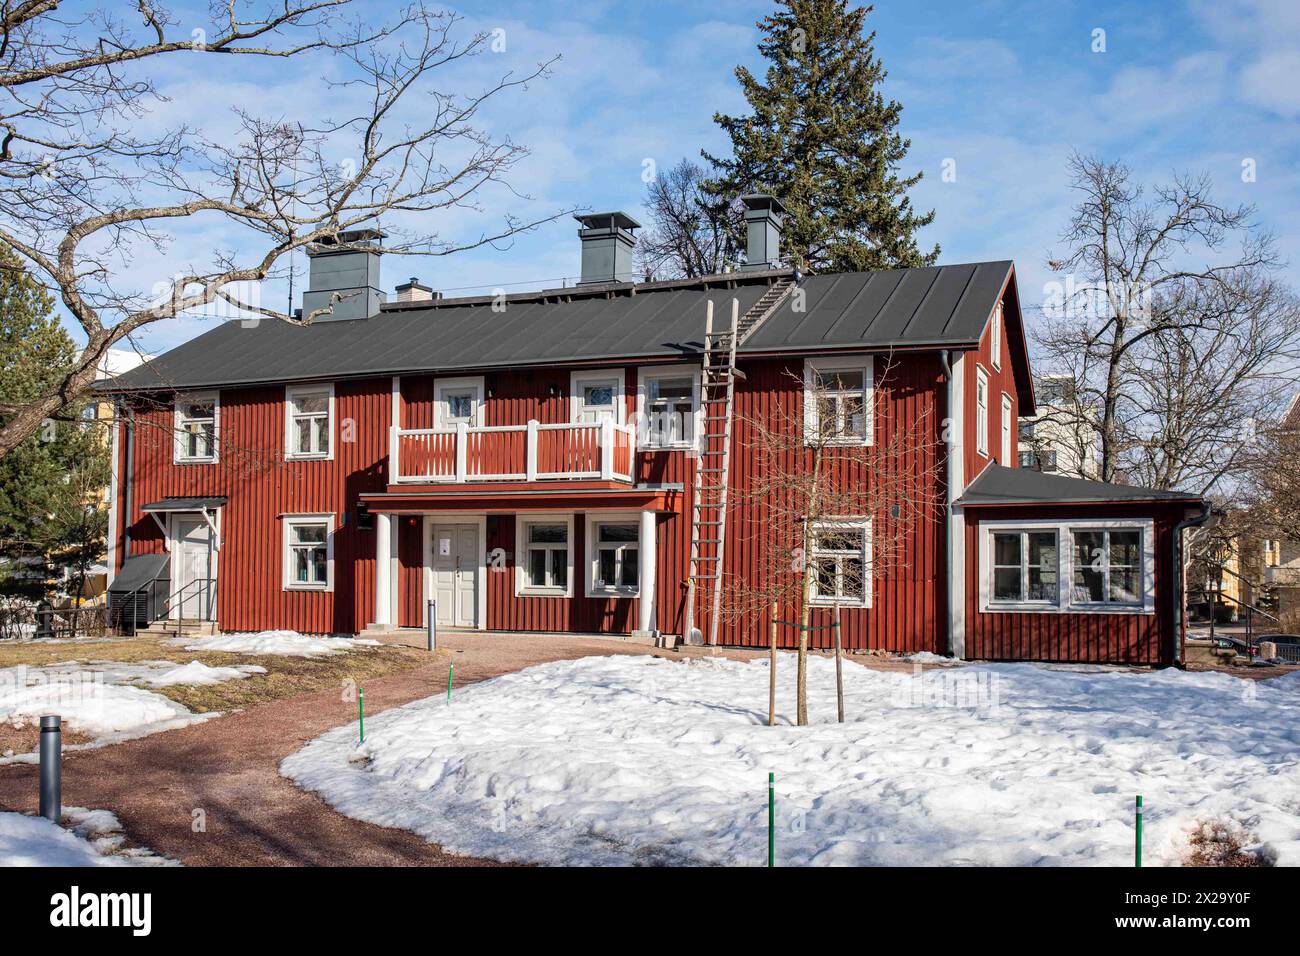 Punainen huvila or Red Villa, the oldest building in Lauttasaari district of Helsinki, Finland Stock Photo